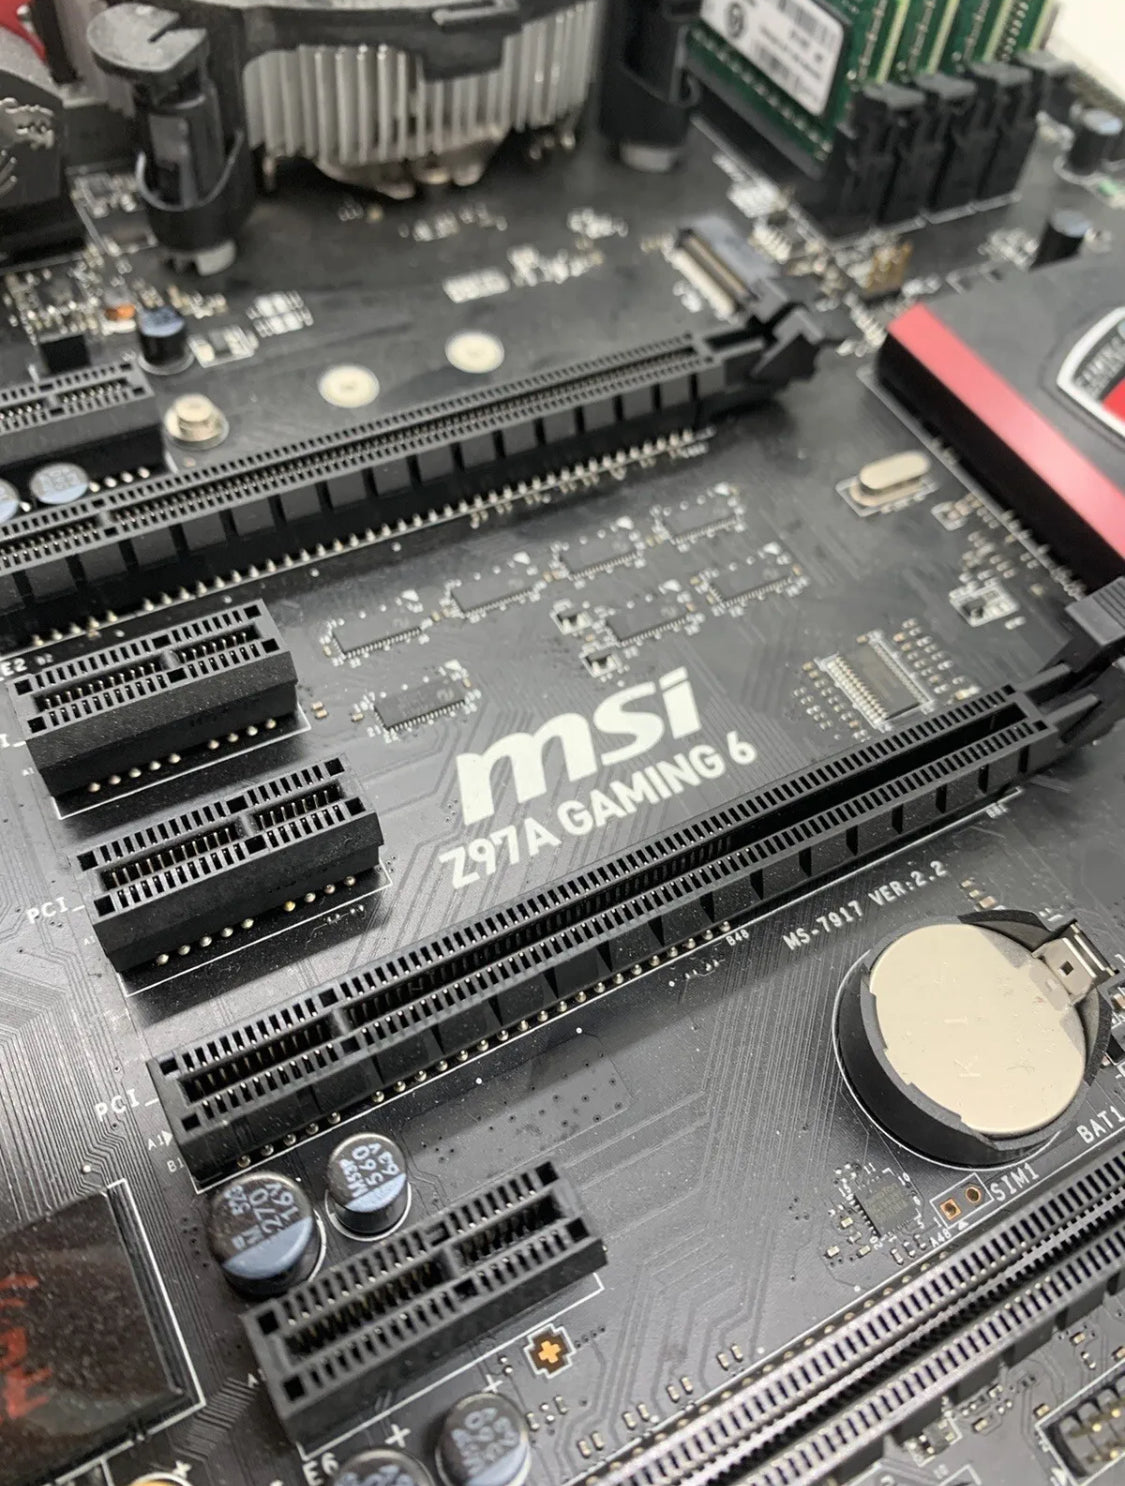 MSI Z97A Gaming 6 ATX Intel Socket 1150 Motherboard